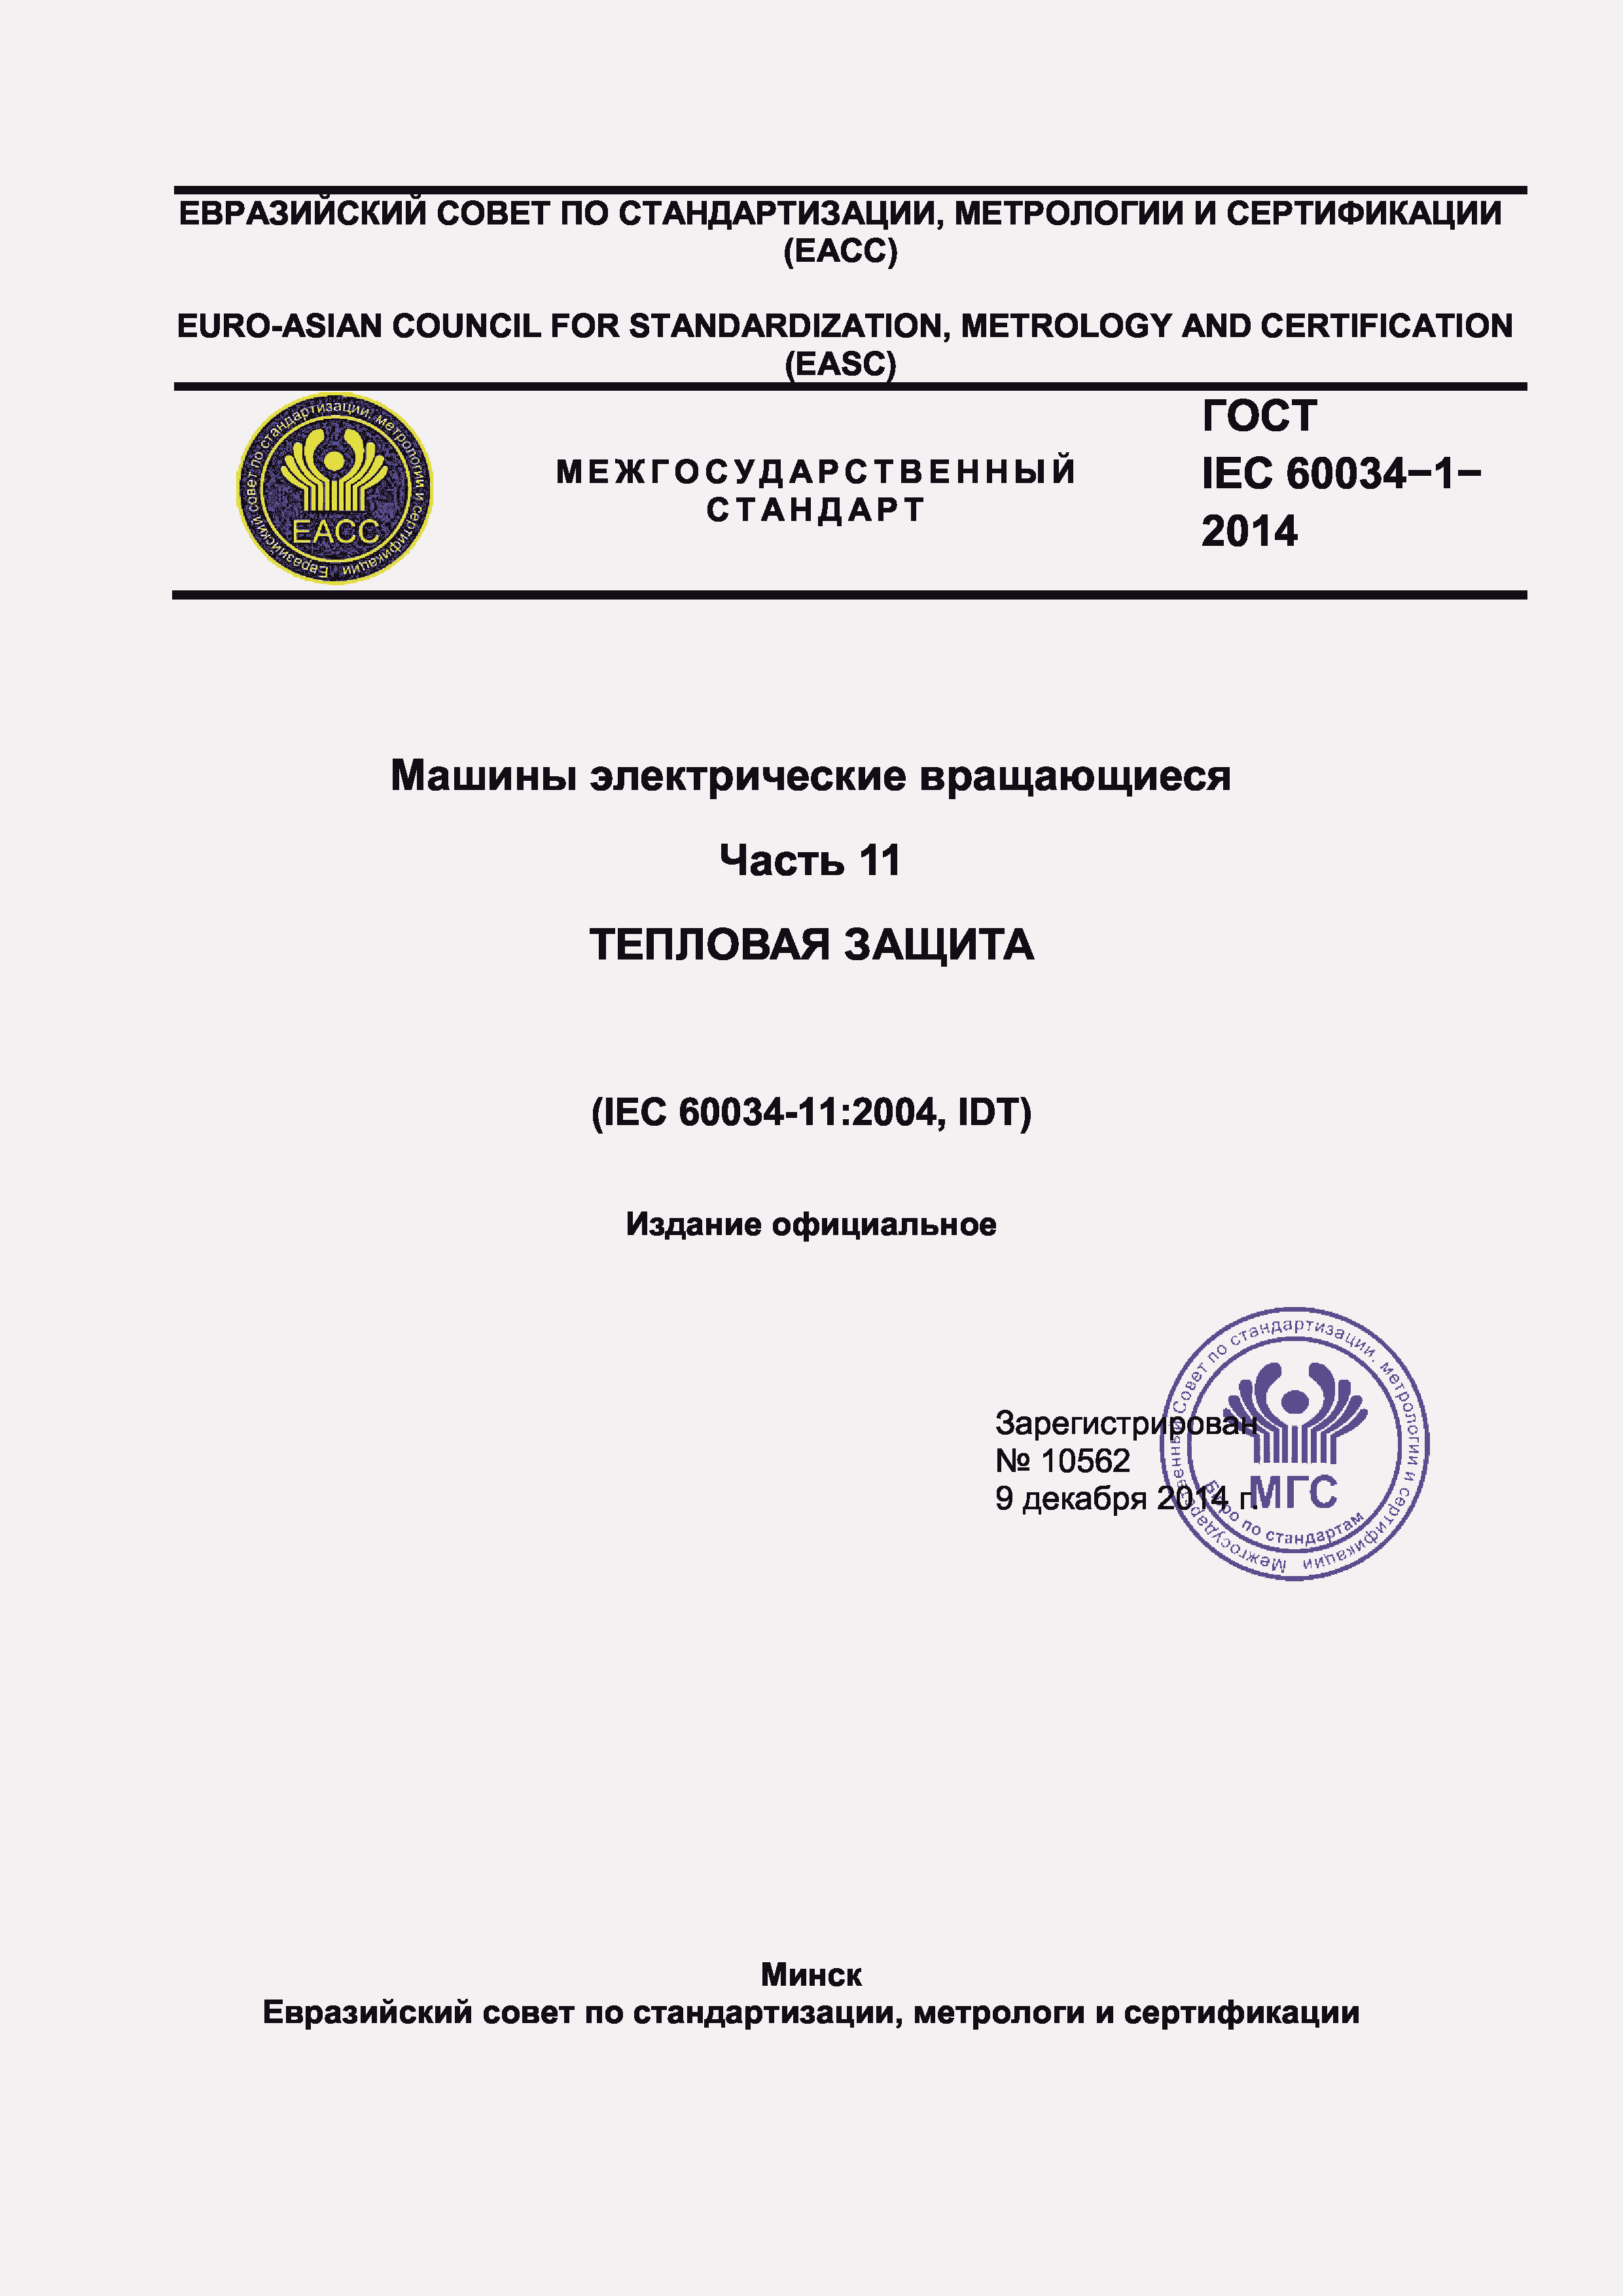  IEC 60034-11-2014.  1